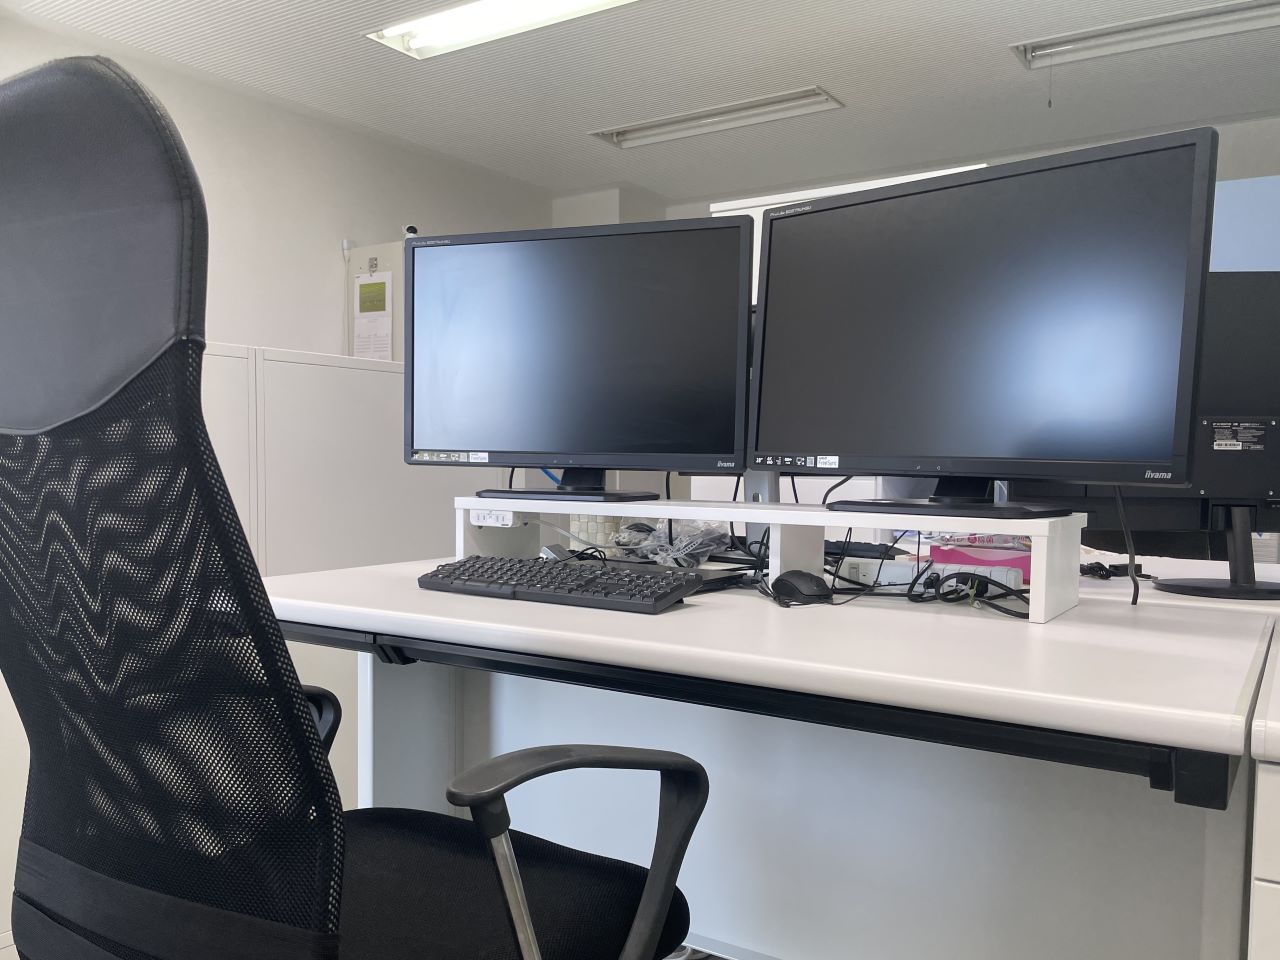 オフィスは、高スペックPCに28インチ以上の外部ディスプレイを2台配置する等、エンジニアが働きやすい環境づくりに注力している。